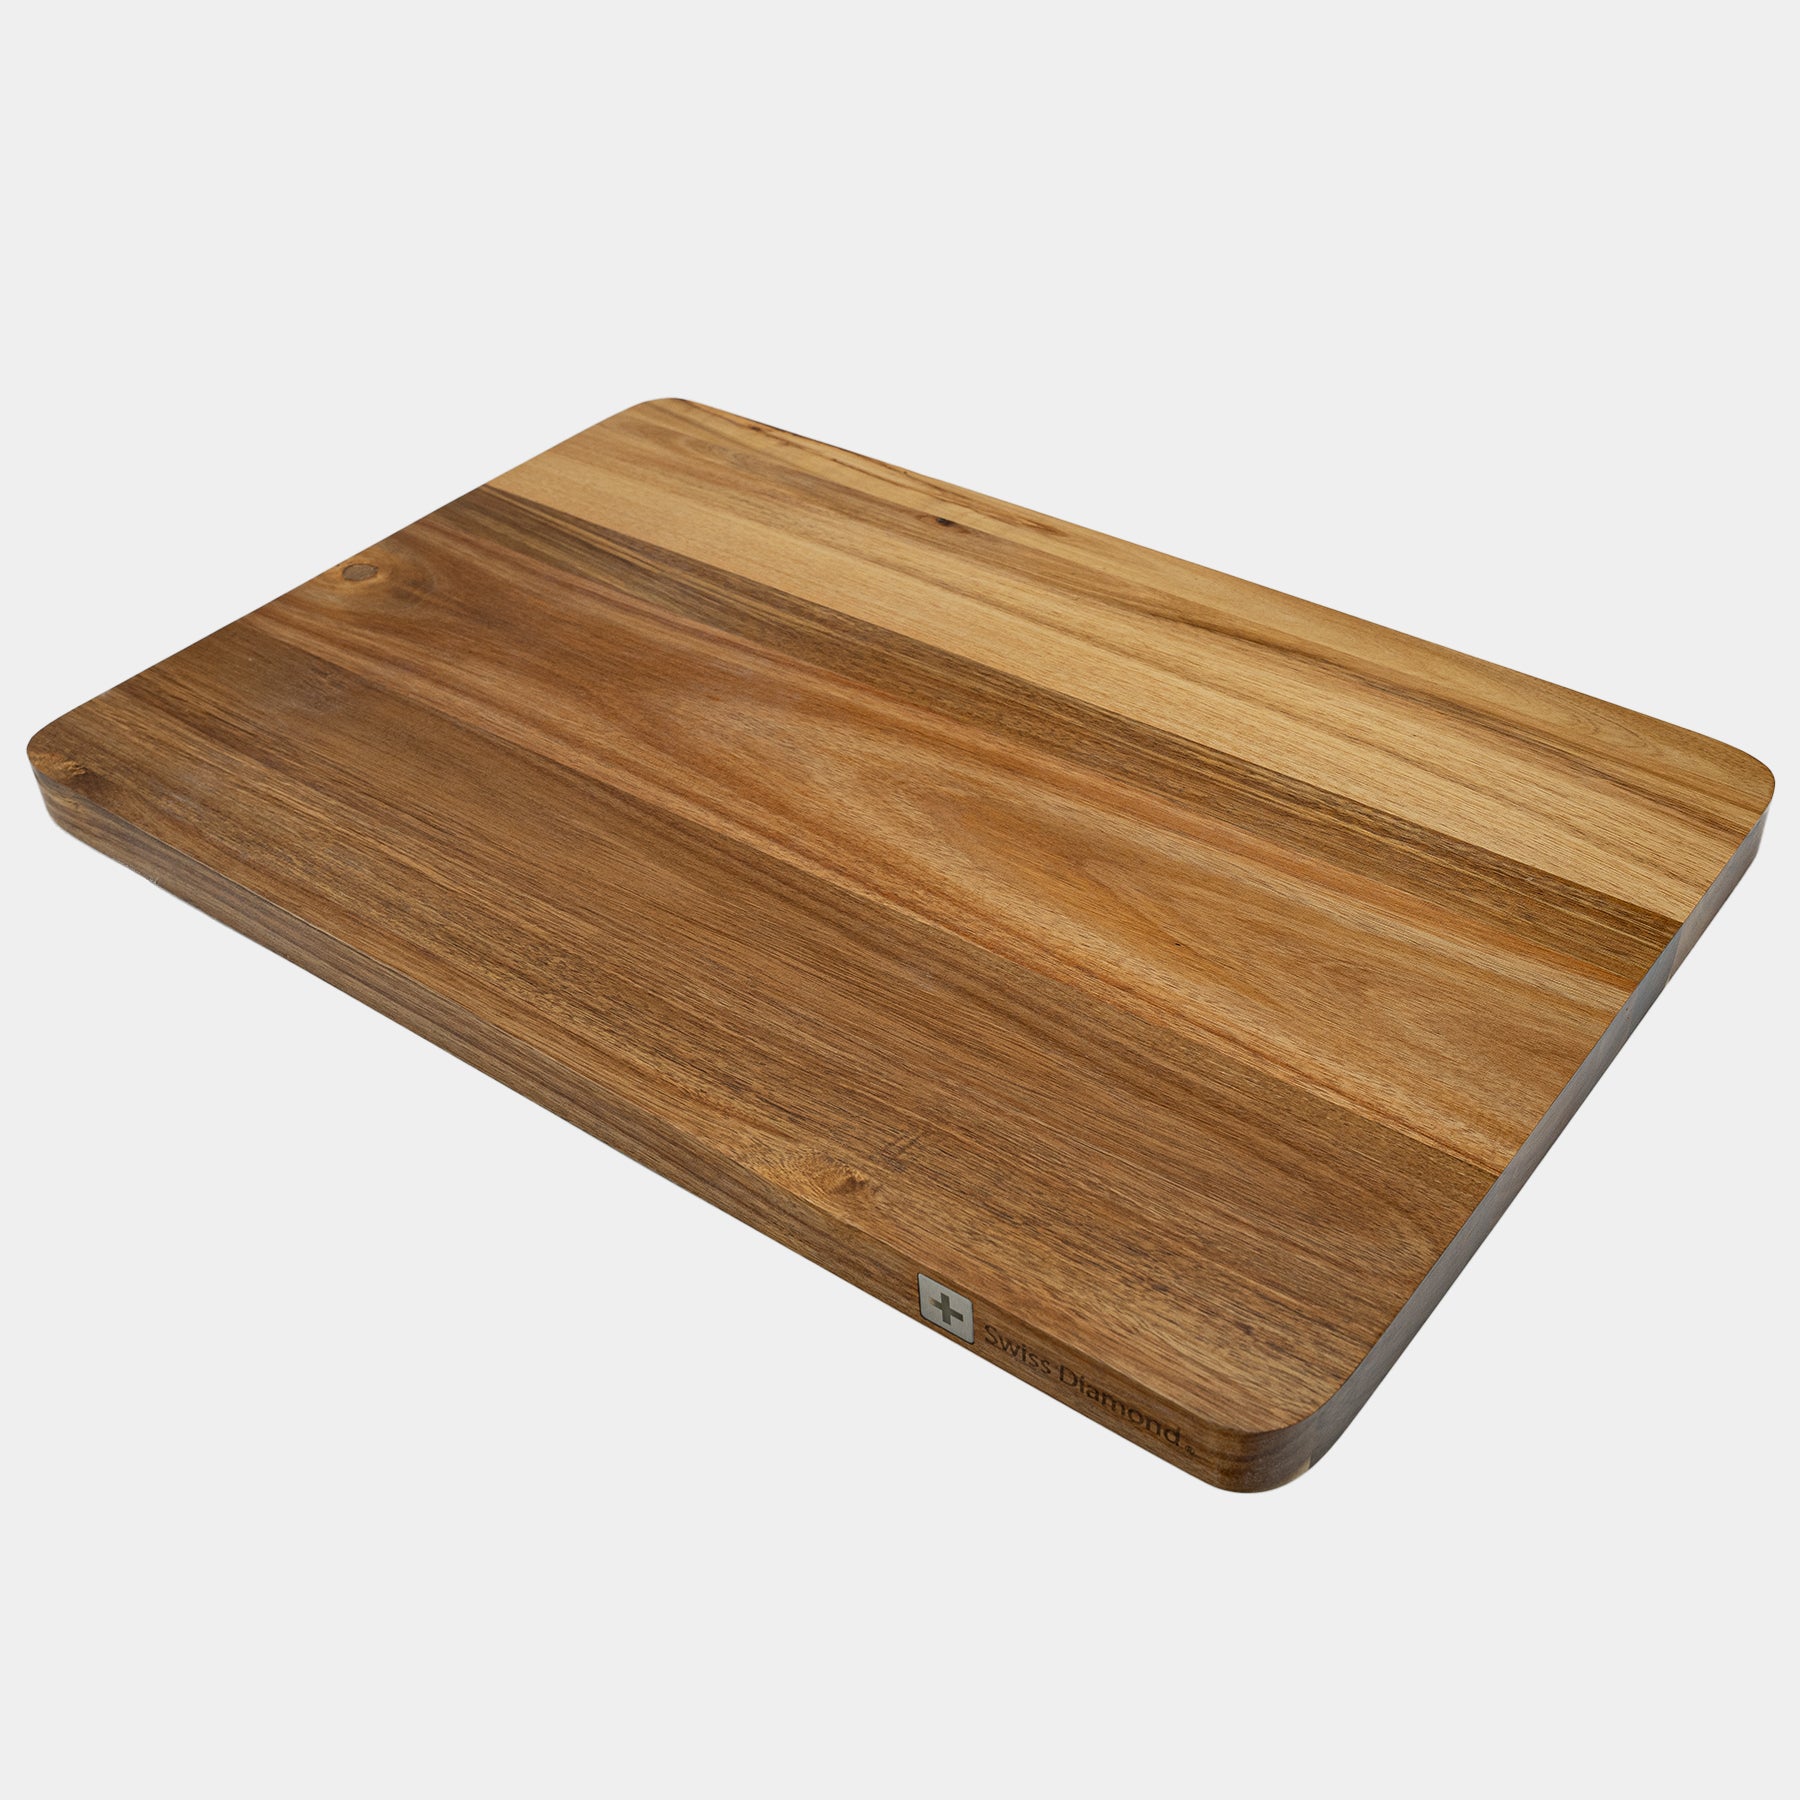 24" Acacia Wood Cutting Board at an angle